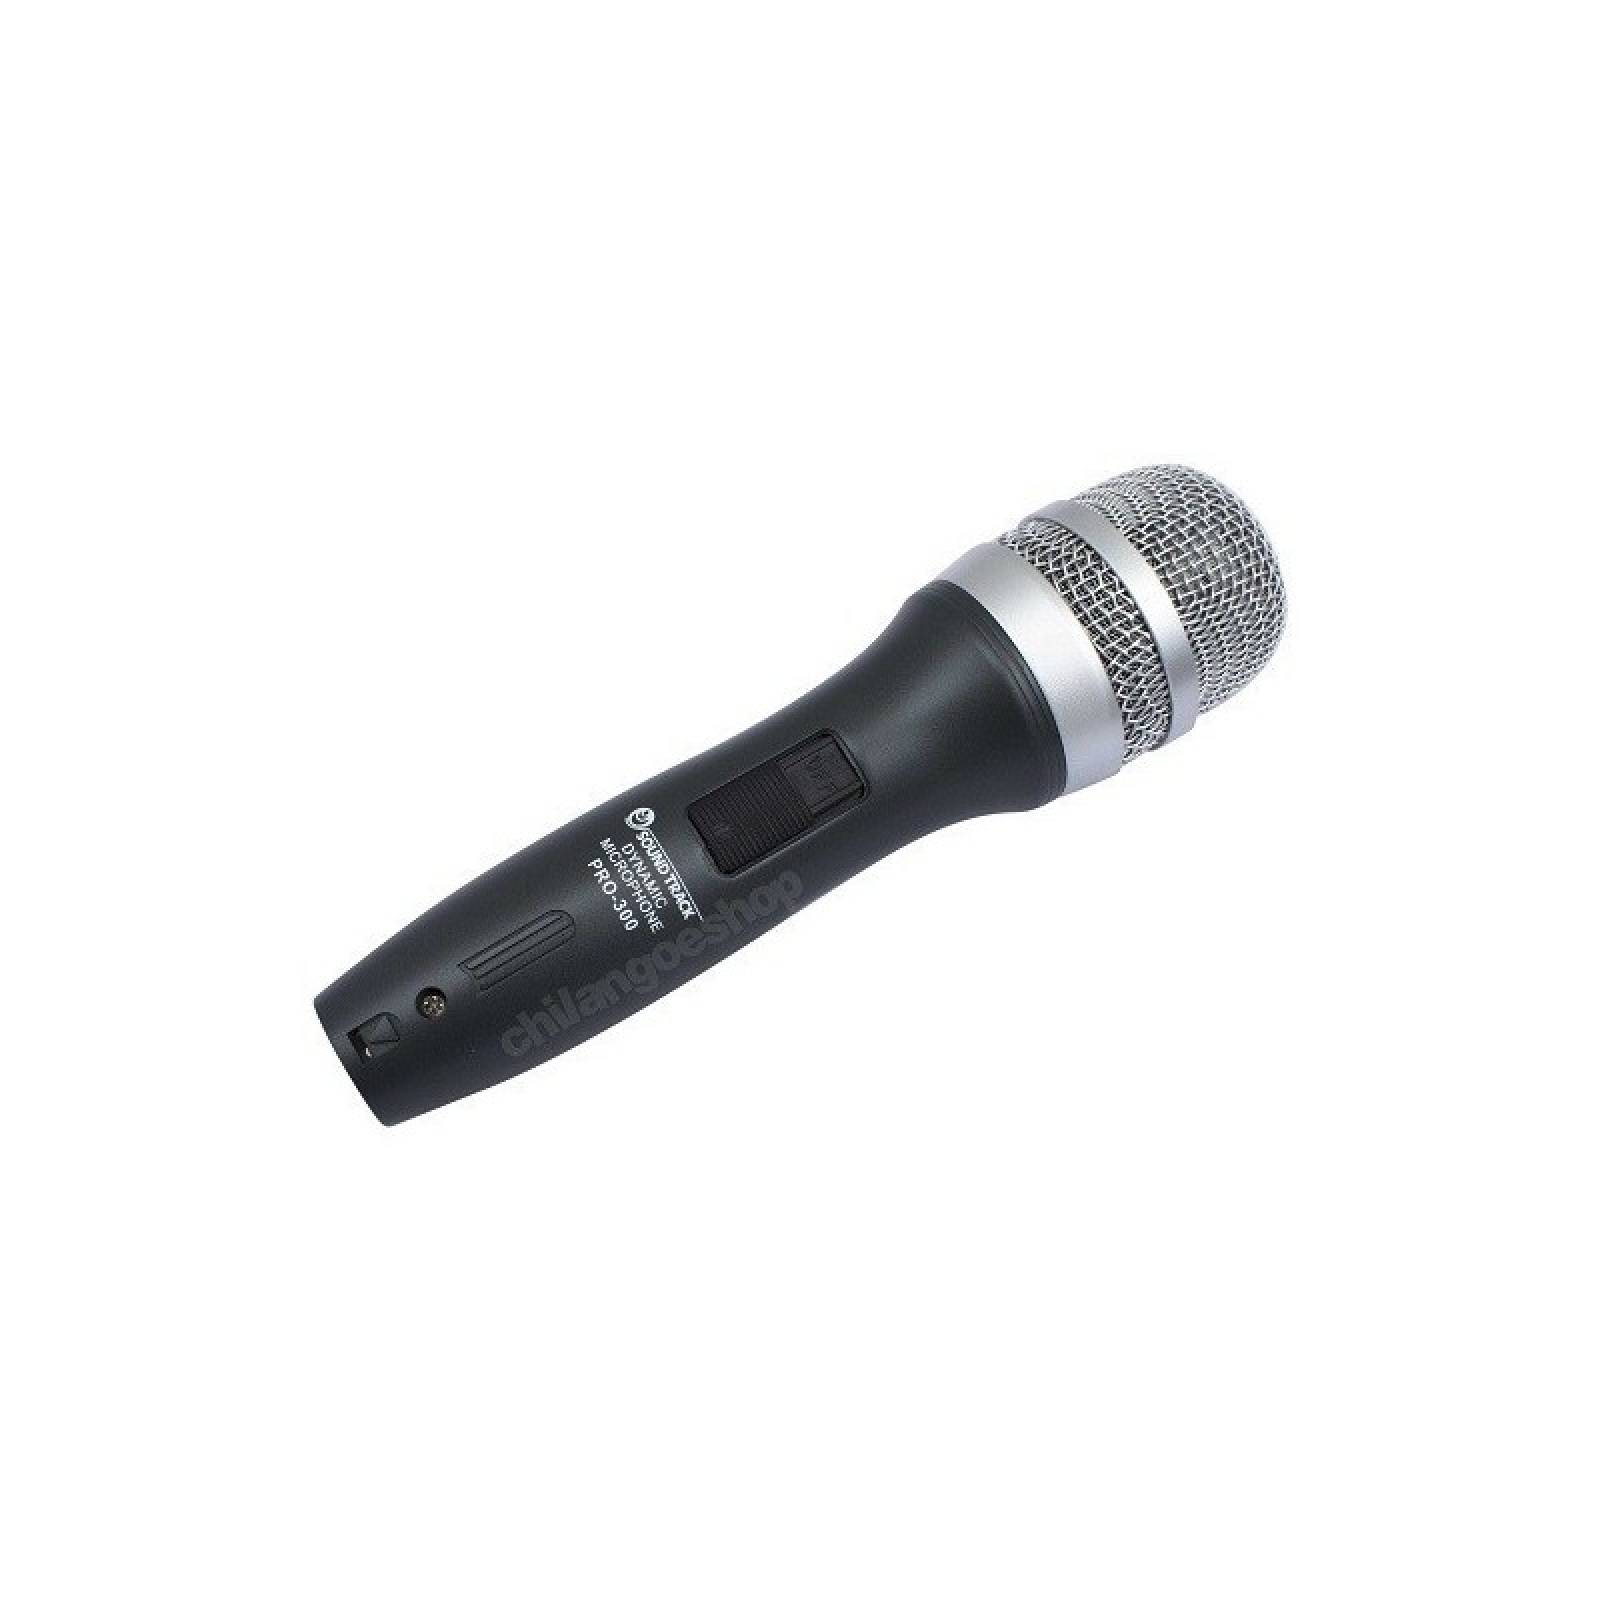 Microfono Dynamico Pro Unidireccional Soundtrack Pro 300 